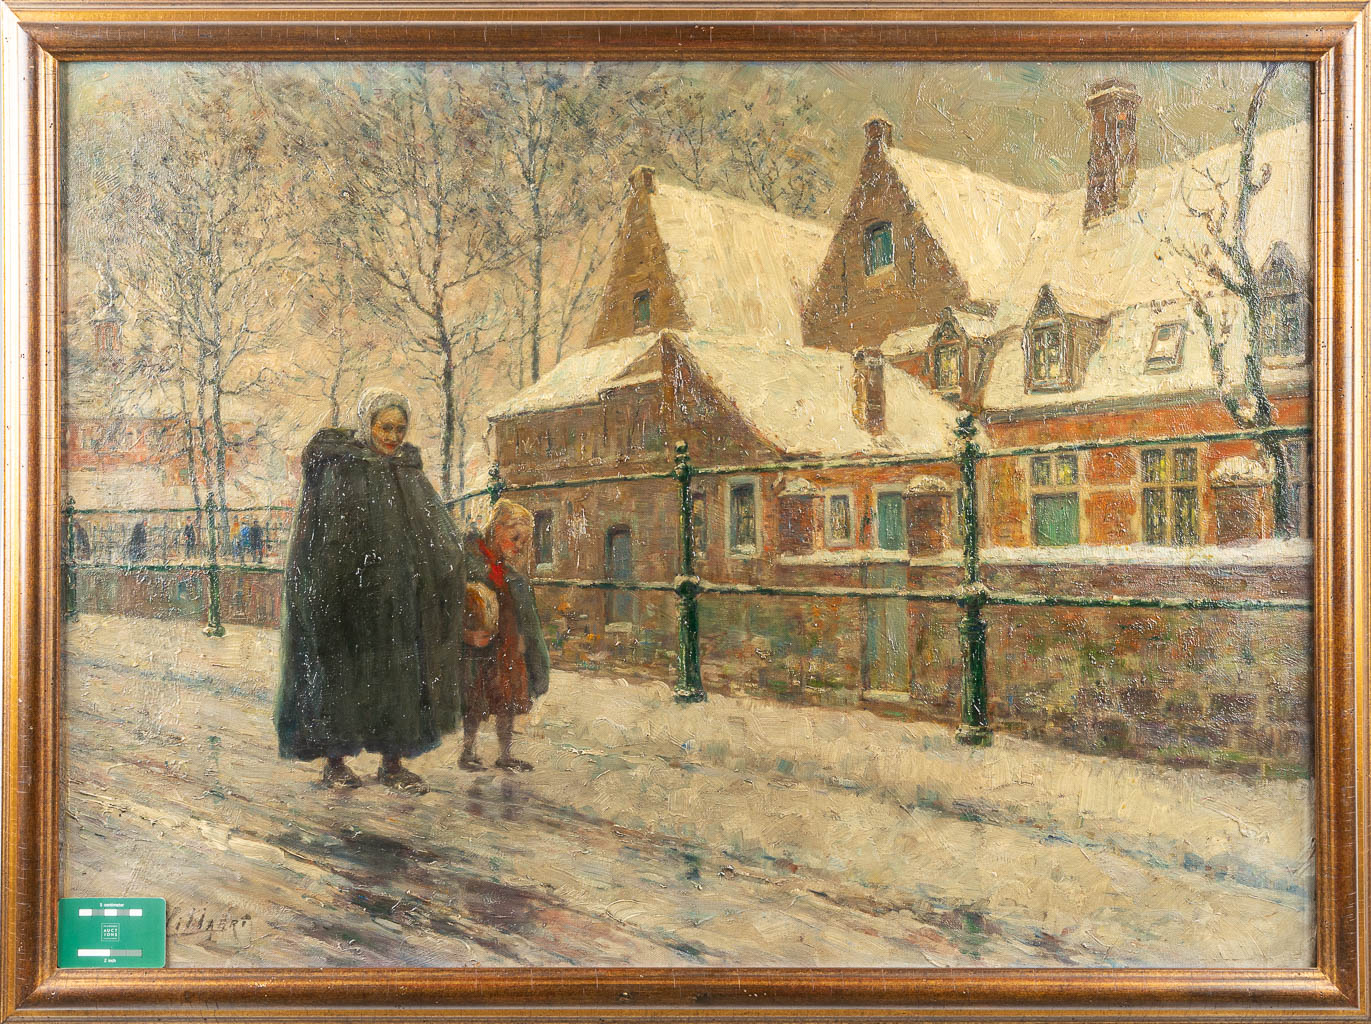 Ferdinand WILLAERT (1861-1938) 'Le long des quais à Gand' a painting, oil on canvas. (102 x 74 cm)